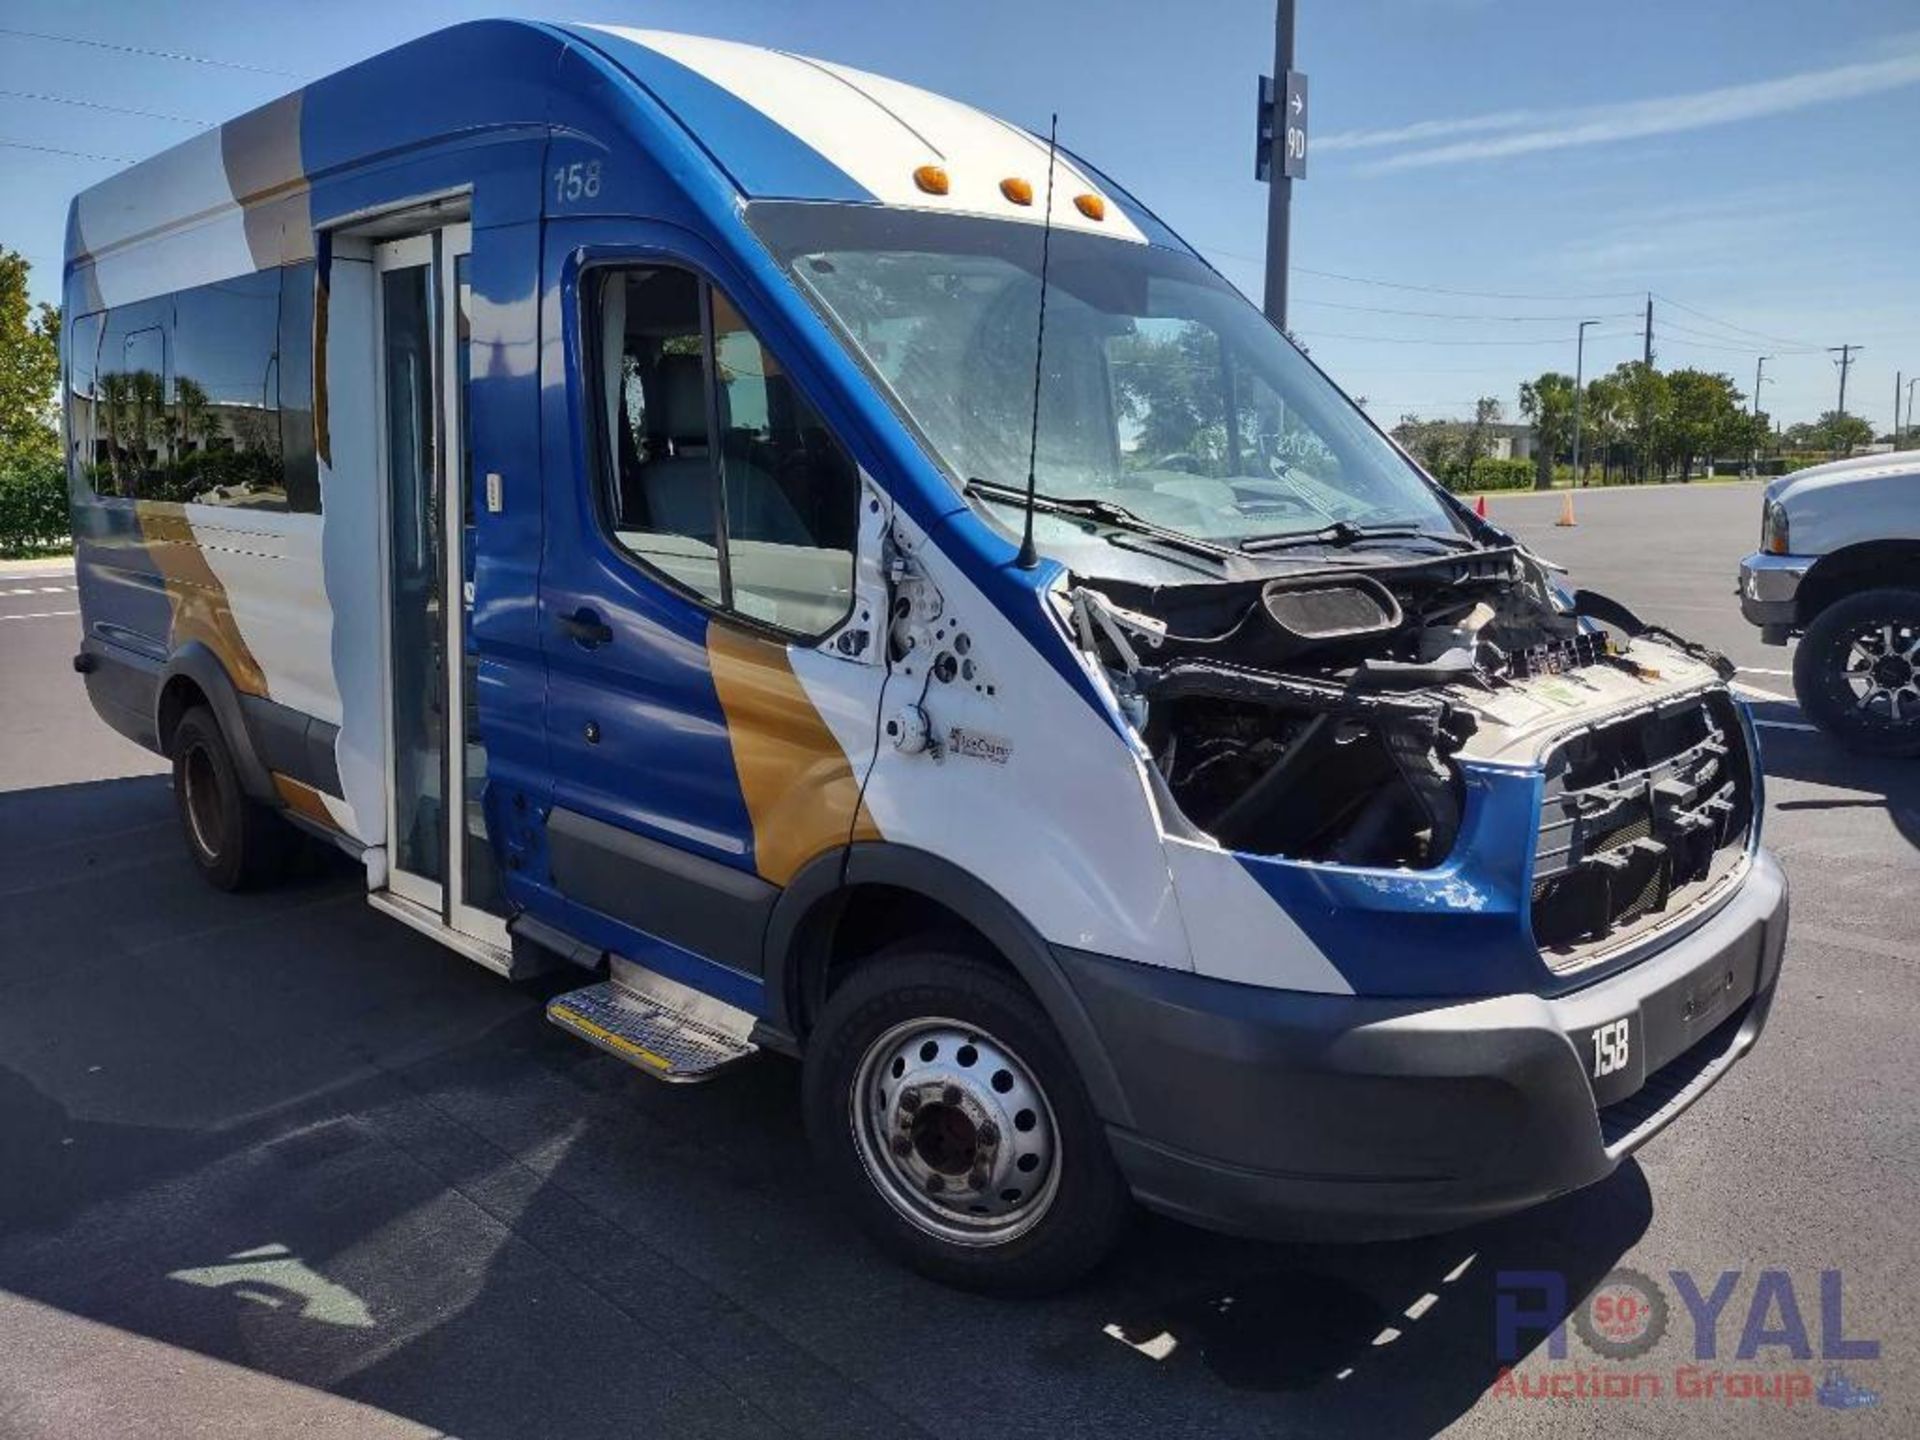 2017 Ford Transit Wagon Passenger Van - Image 2 of 29